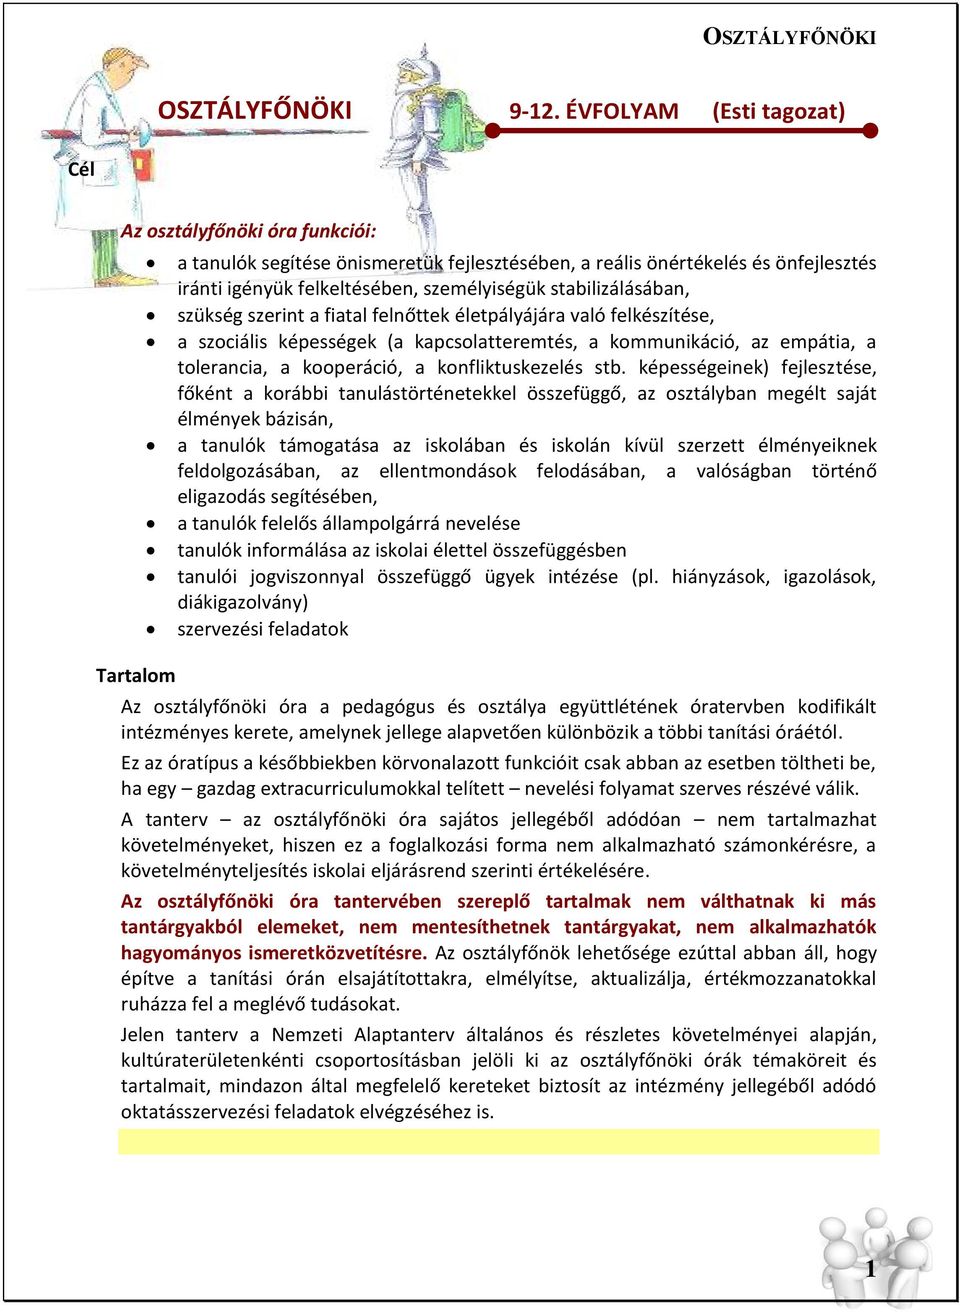 OSZTÁLYFŐNÖKI ÉVFOLYAM (Esti tagozat) - PDF Ingyenes letöltés